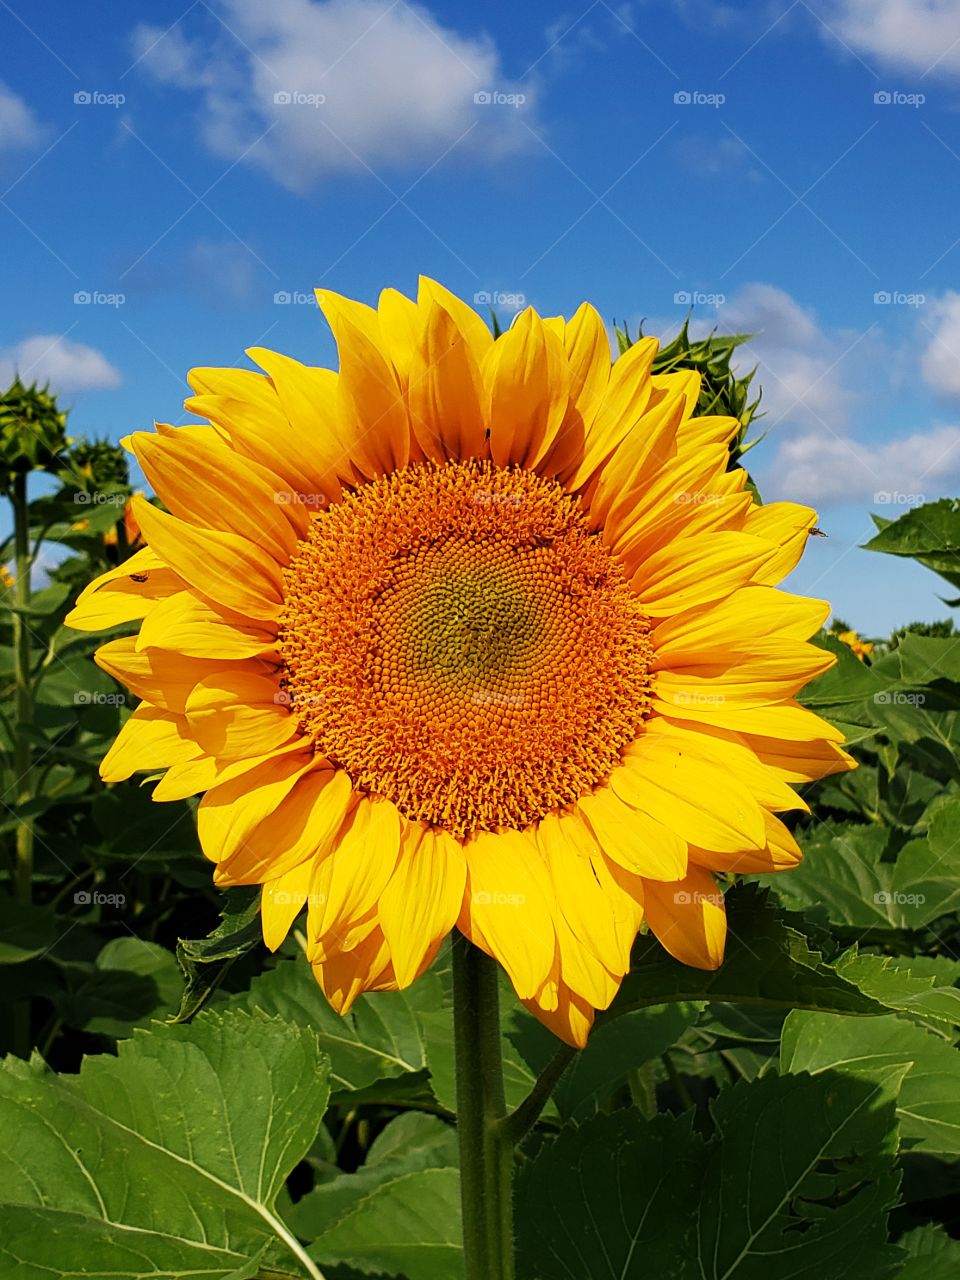 sunflower face